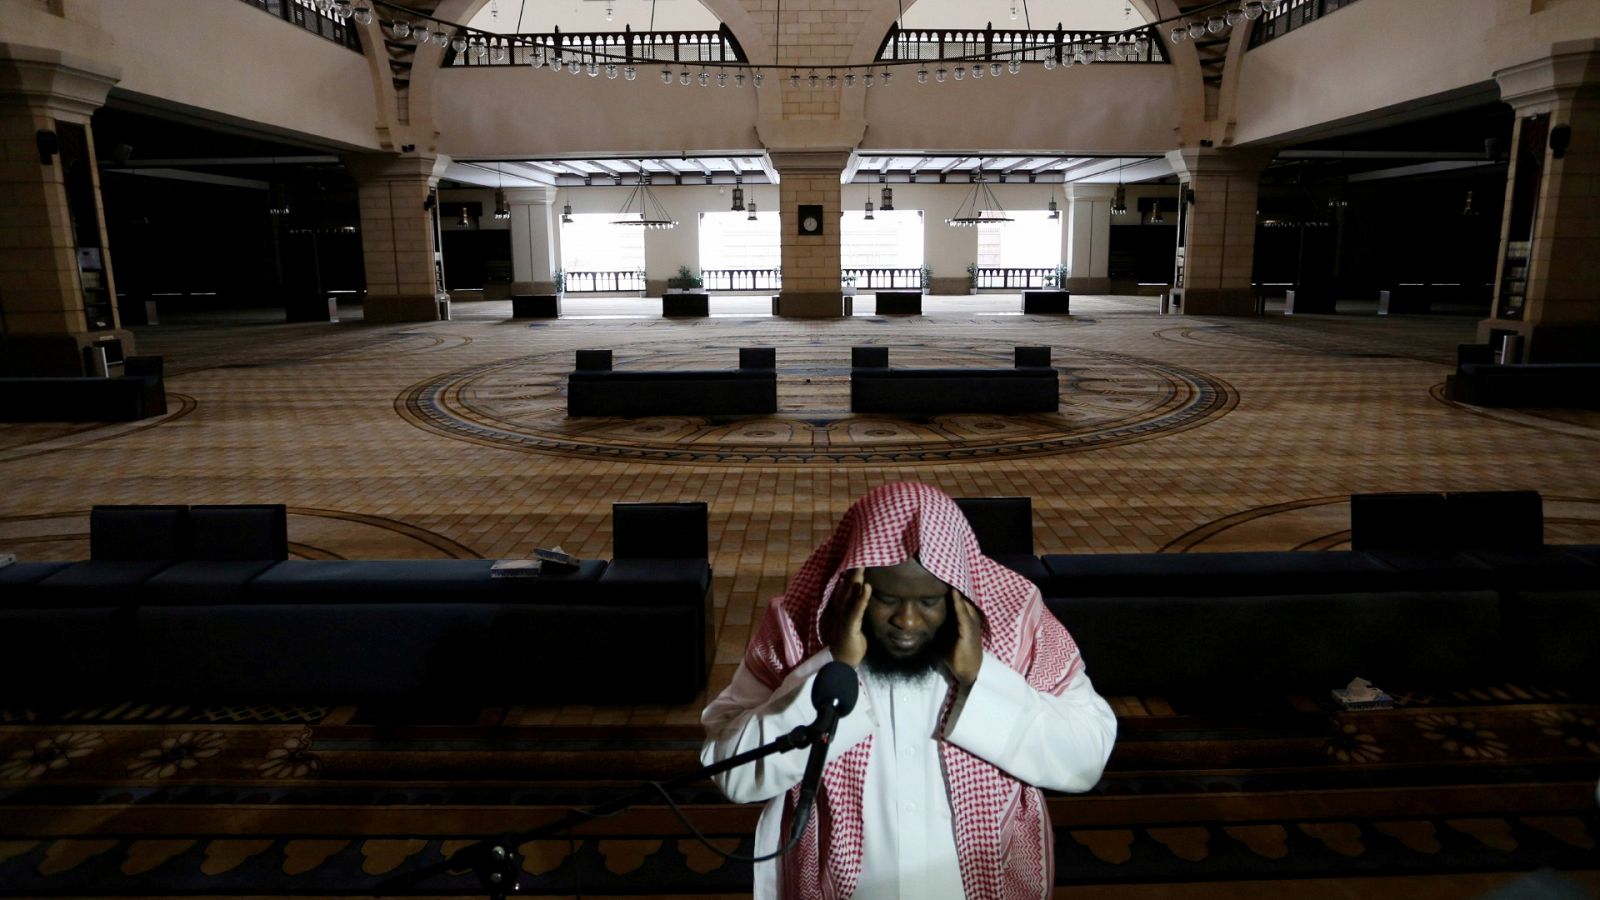  Un clérigo pide la oración en una mezquita vacía de Al-Rajhi de Arabia Saudí